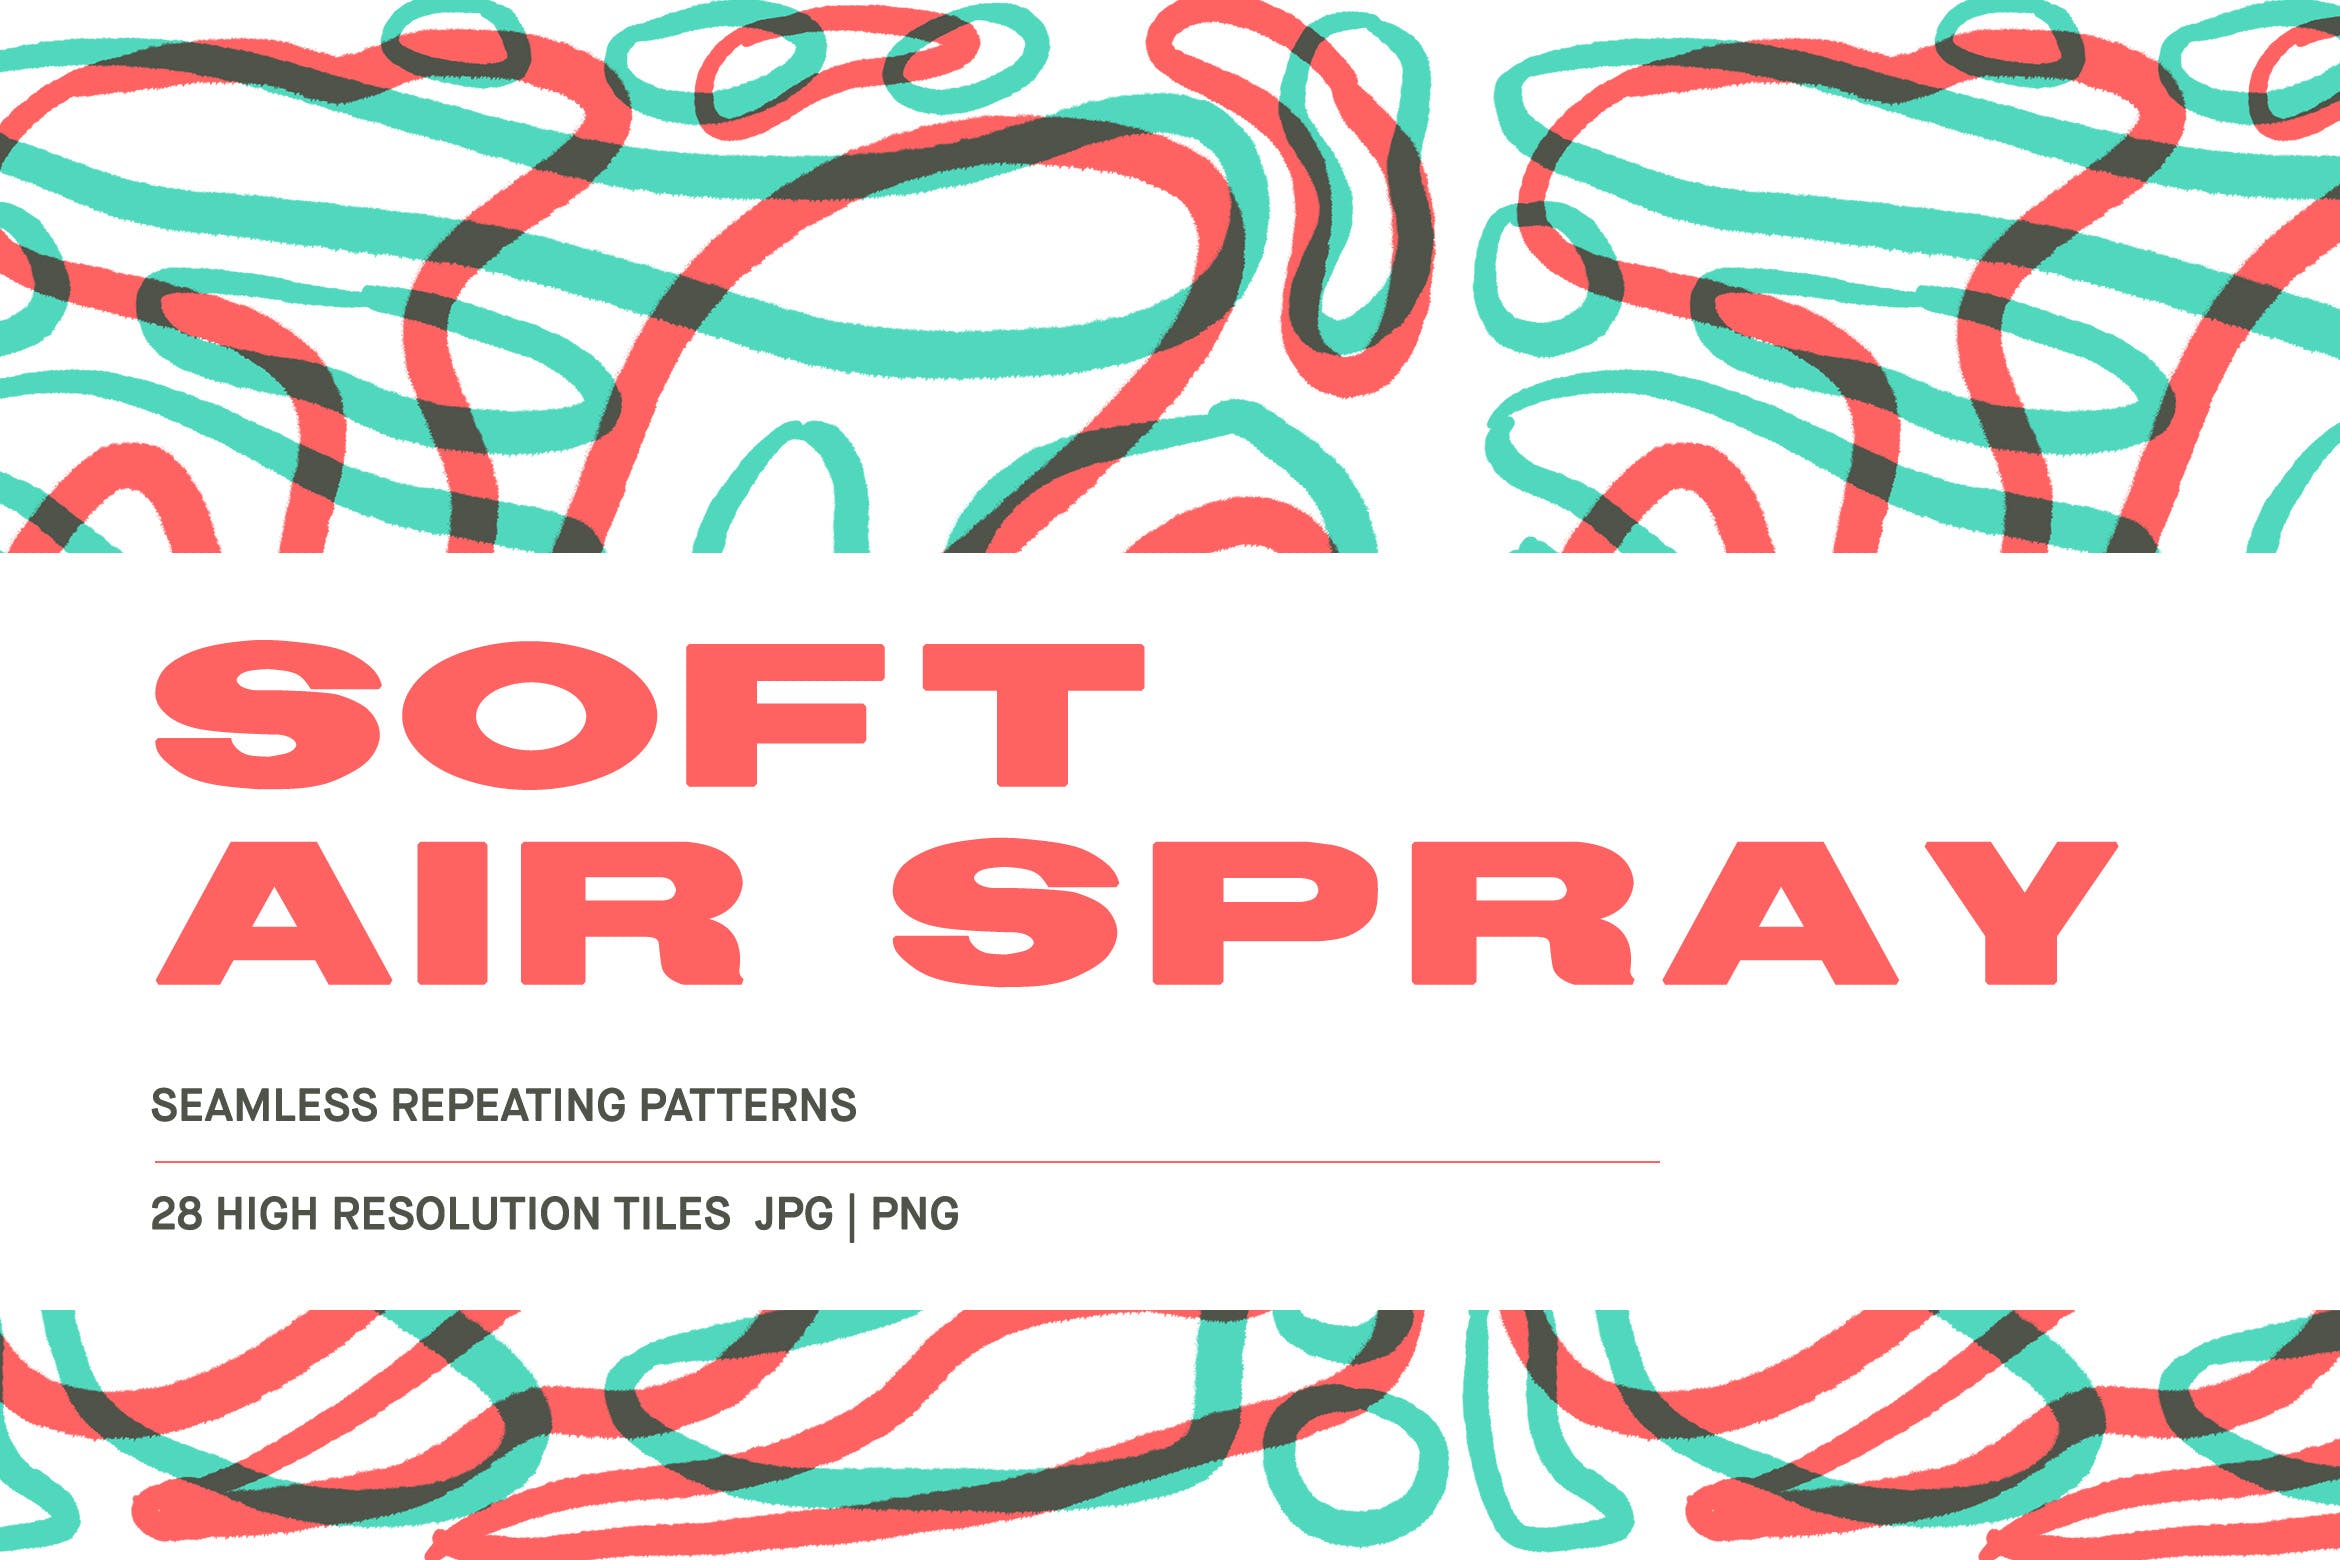 高清水彩笔描绘线条第一素材精选背景素材 Soft Air Spray – Background patterns插图